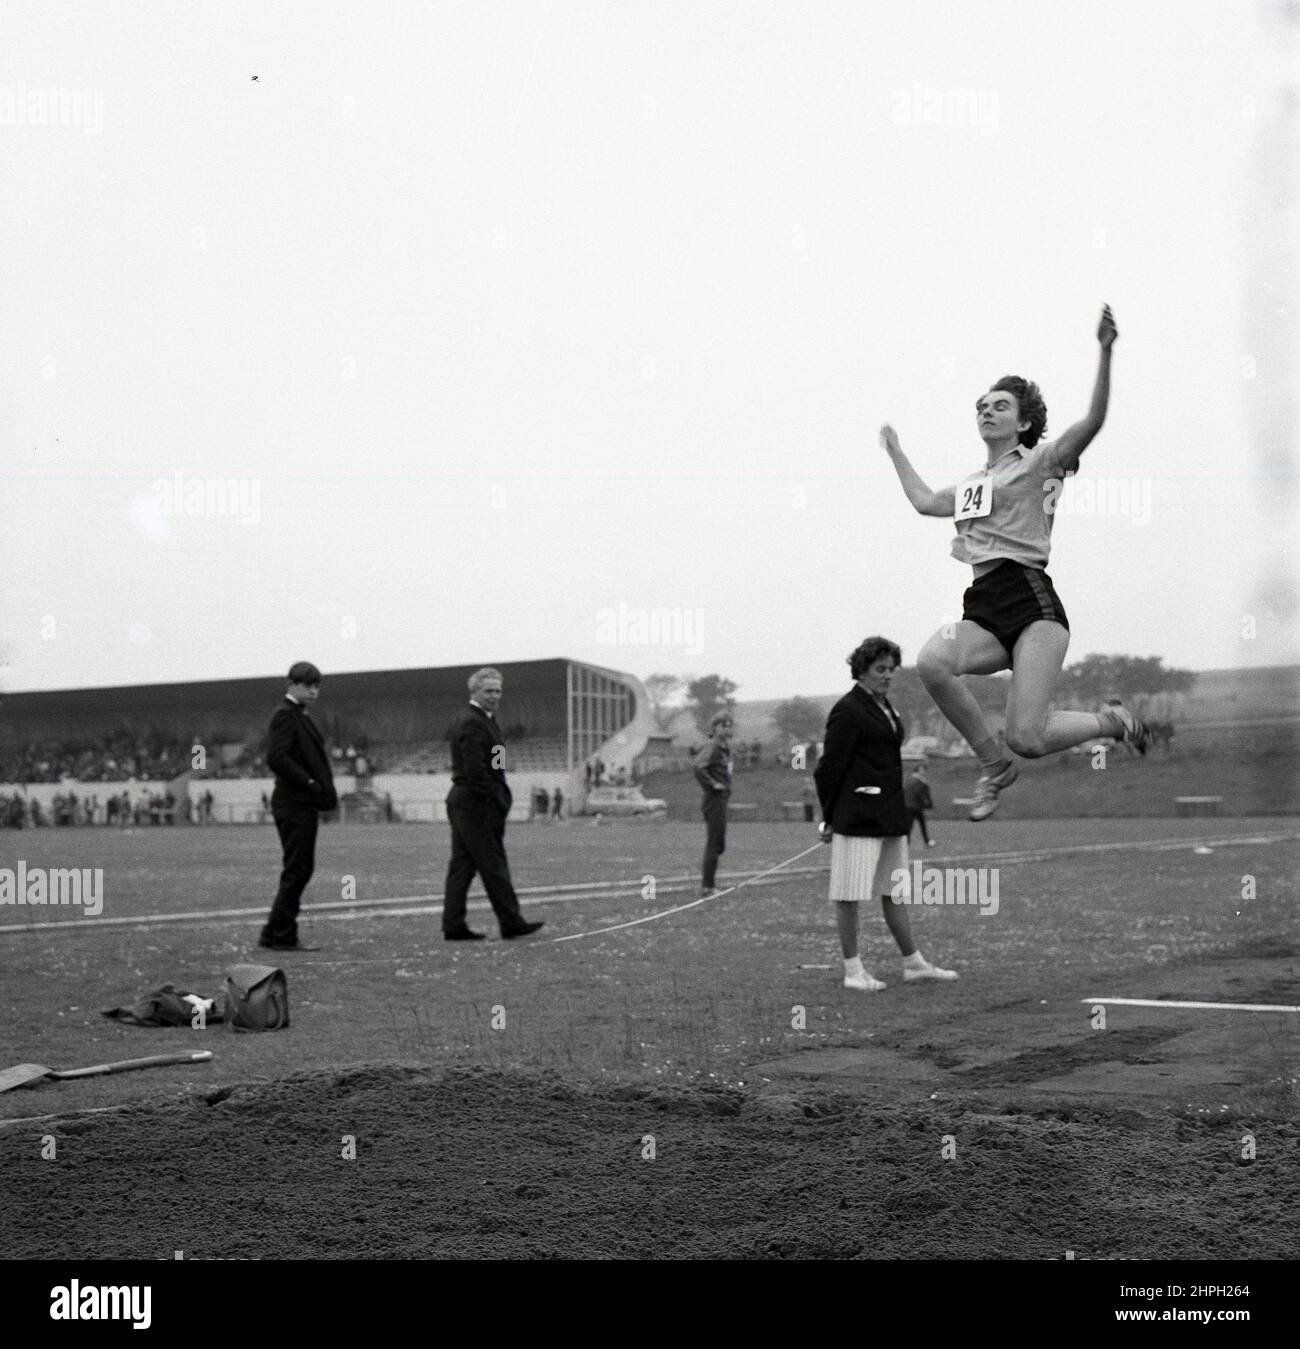 1960s, historique, une athlète féminine à mi-parcours faisant le long saut, Fife, Écosse, Royaume-Uni. La vitesse, la force et l'agilité sont toutes nécessaires dans cet événement sur piste et sur le terrain, où l'objectif est de sauter le plus loin possible d'un point de décollage. Les femmes ont pris part pour la première fois au long saut olympique en 1948 à Londres. Banque D'Images